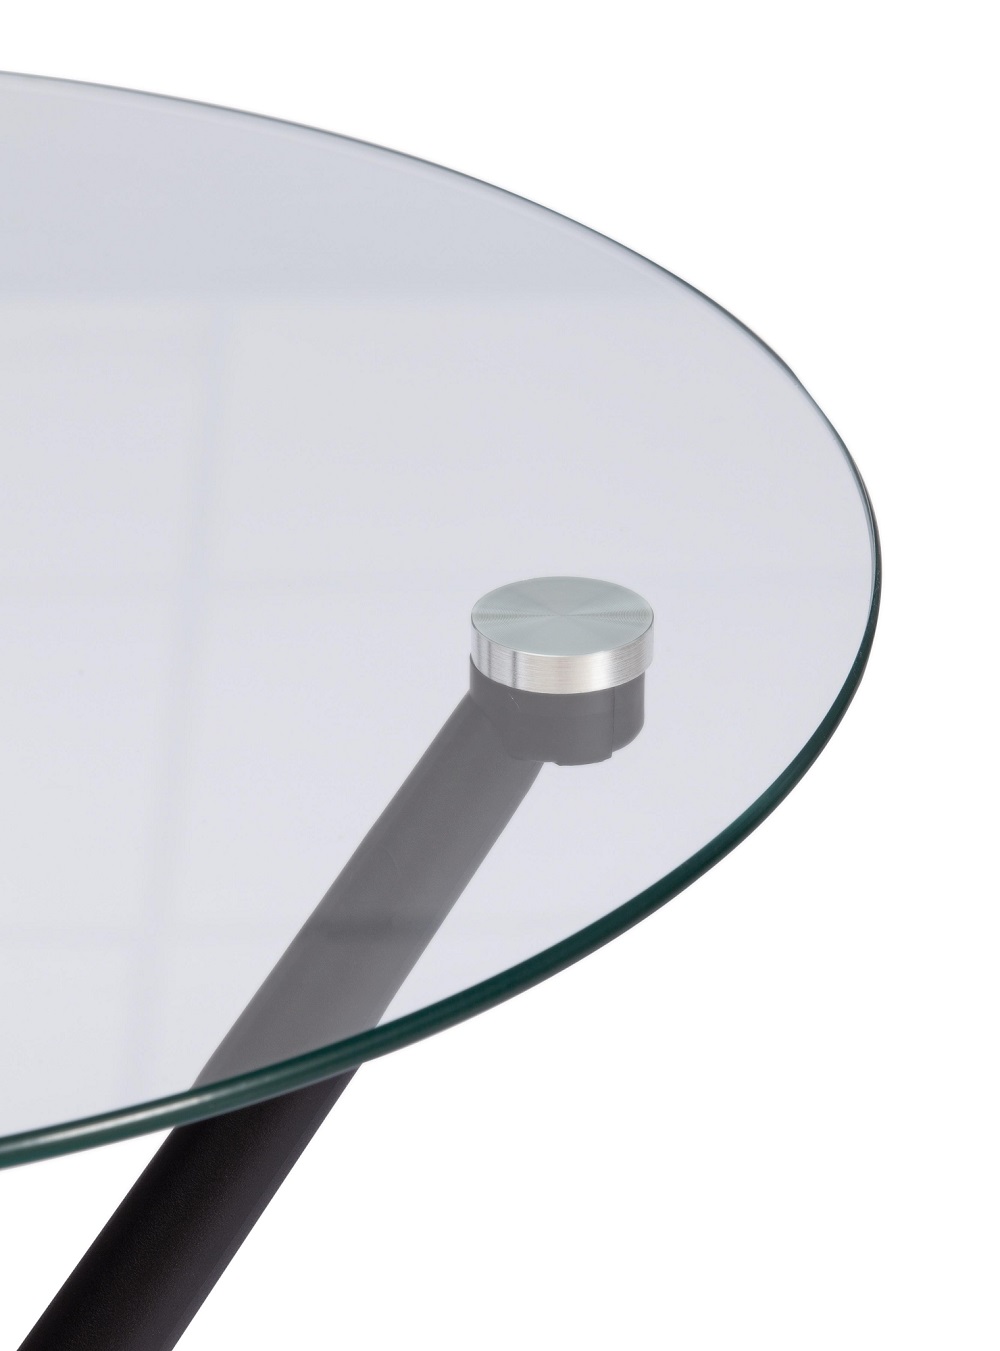 Круглый прозрачный стол из стекла и пластика. 